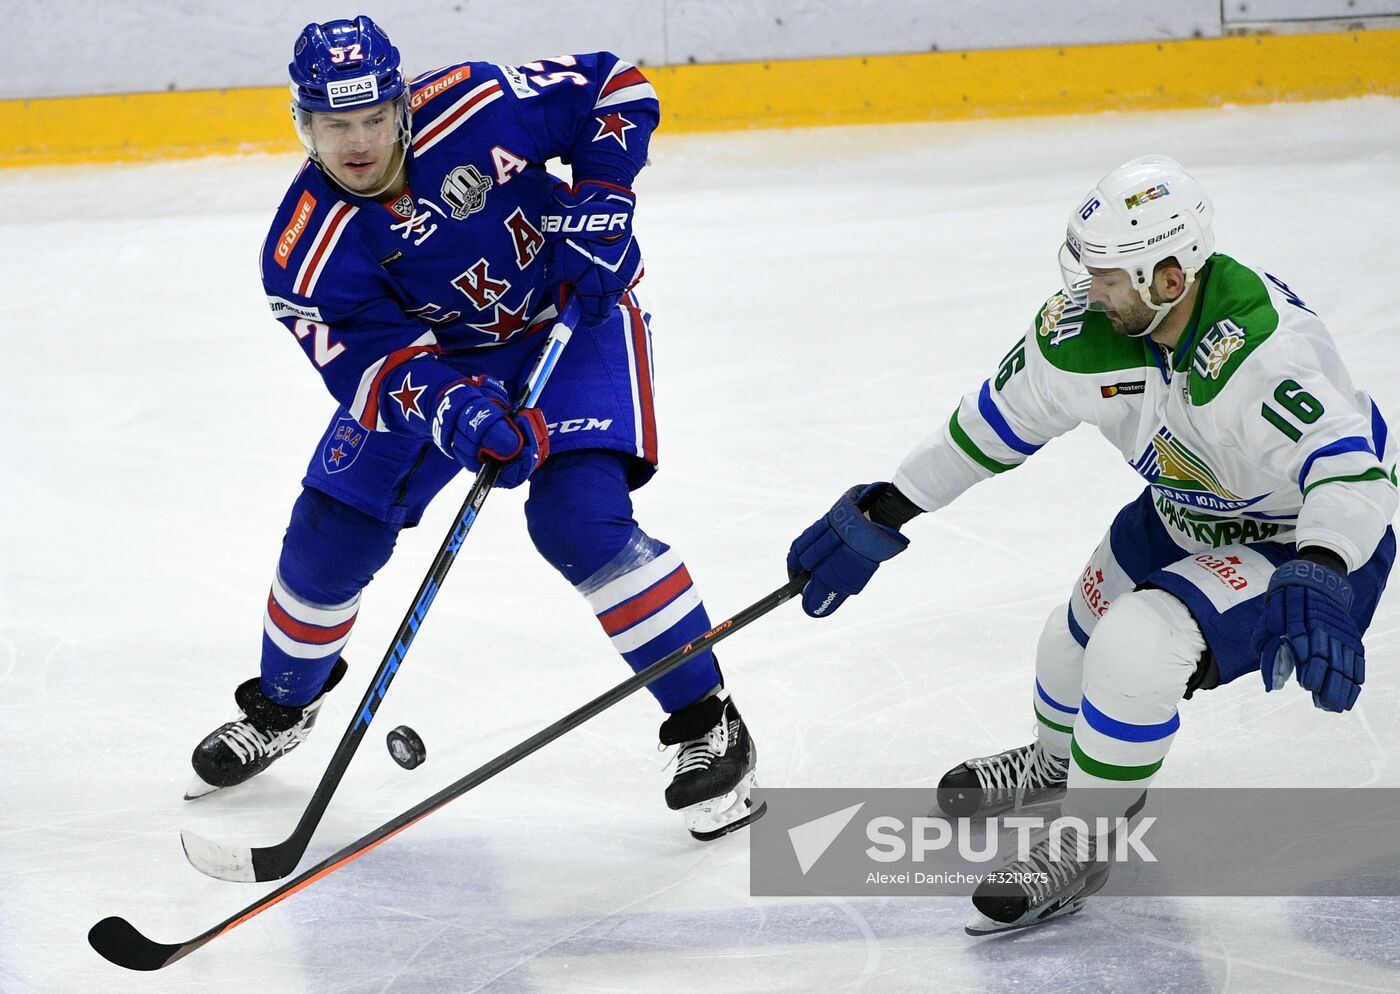 Kontinental Hockey League. SKA vs. Salavat Yulaev